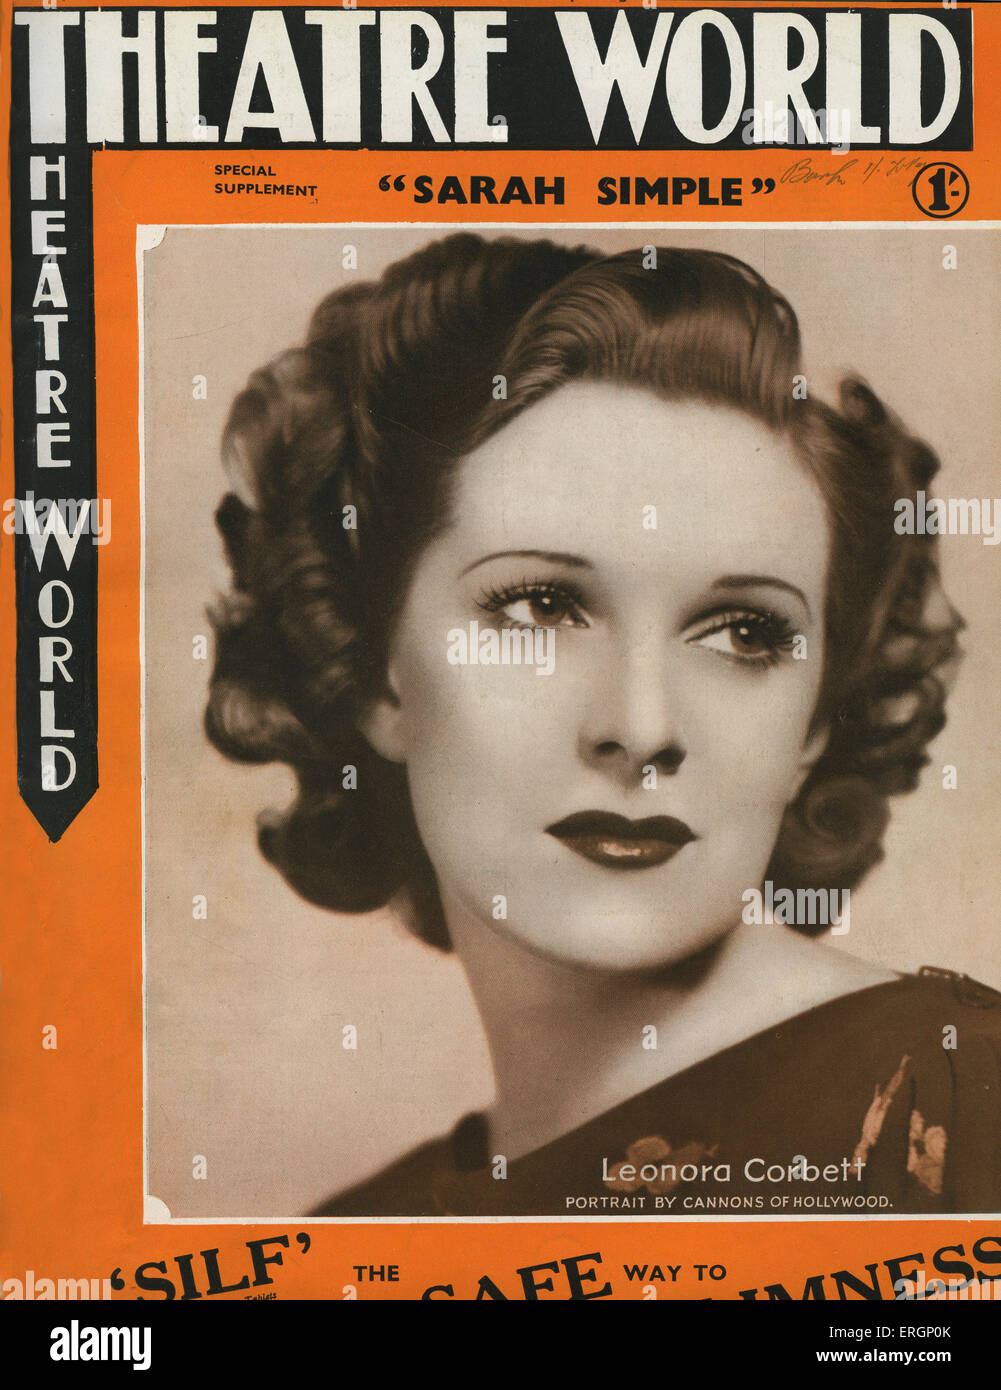 Leonora Corbett in 'Sarah' semplice da A.A.Milne. Teatro copertura mondiale Luglio 1937.ritratto nell'interno della copertura accreditati ai cannoni di Foto Stock